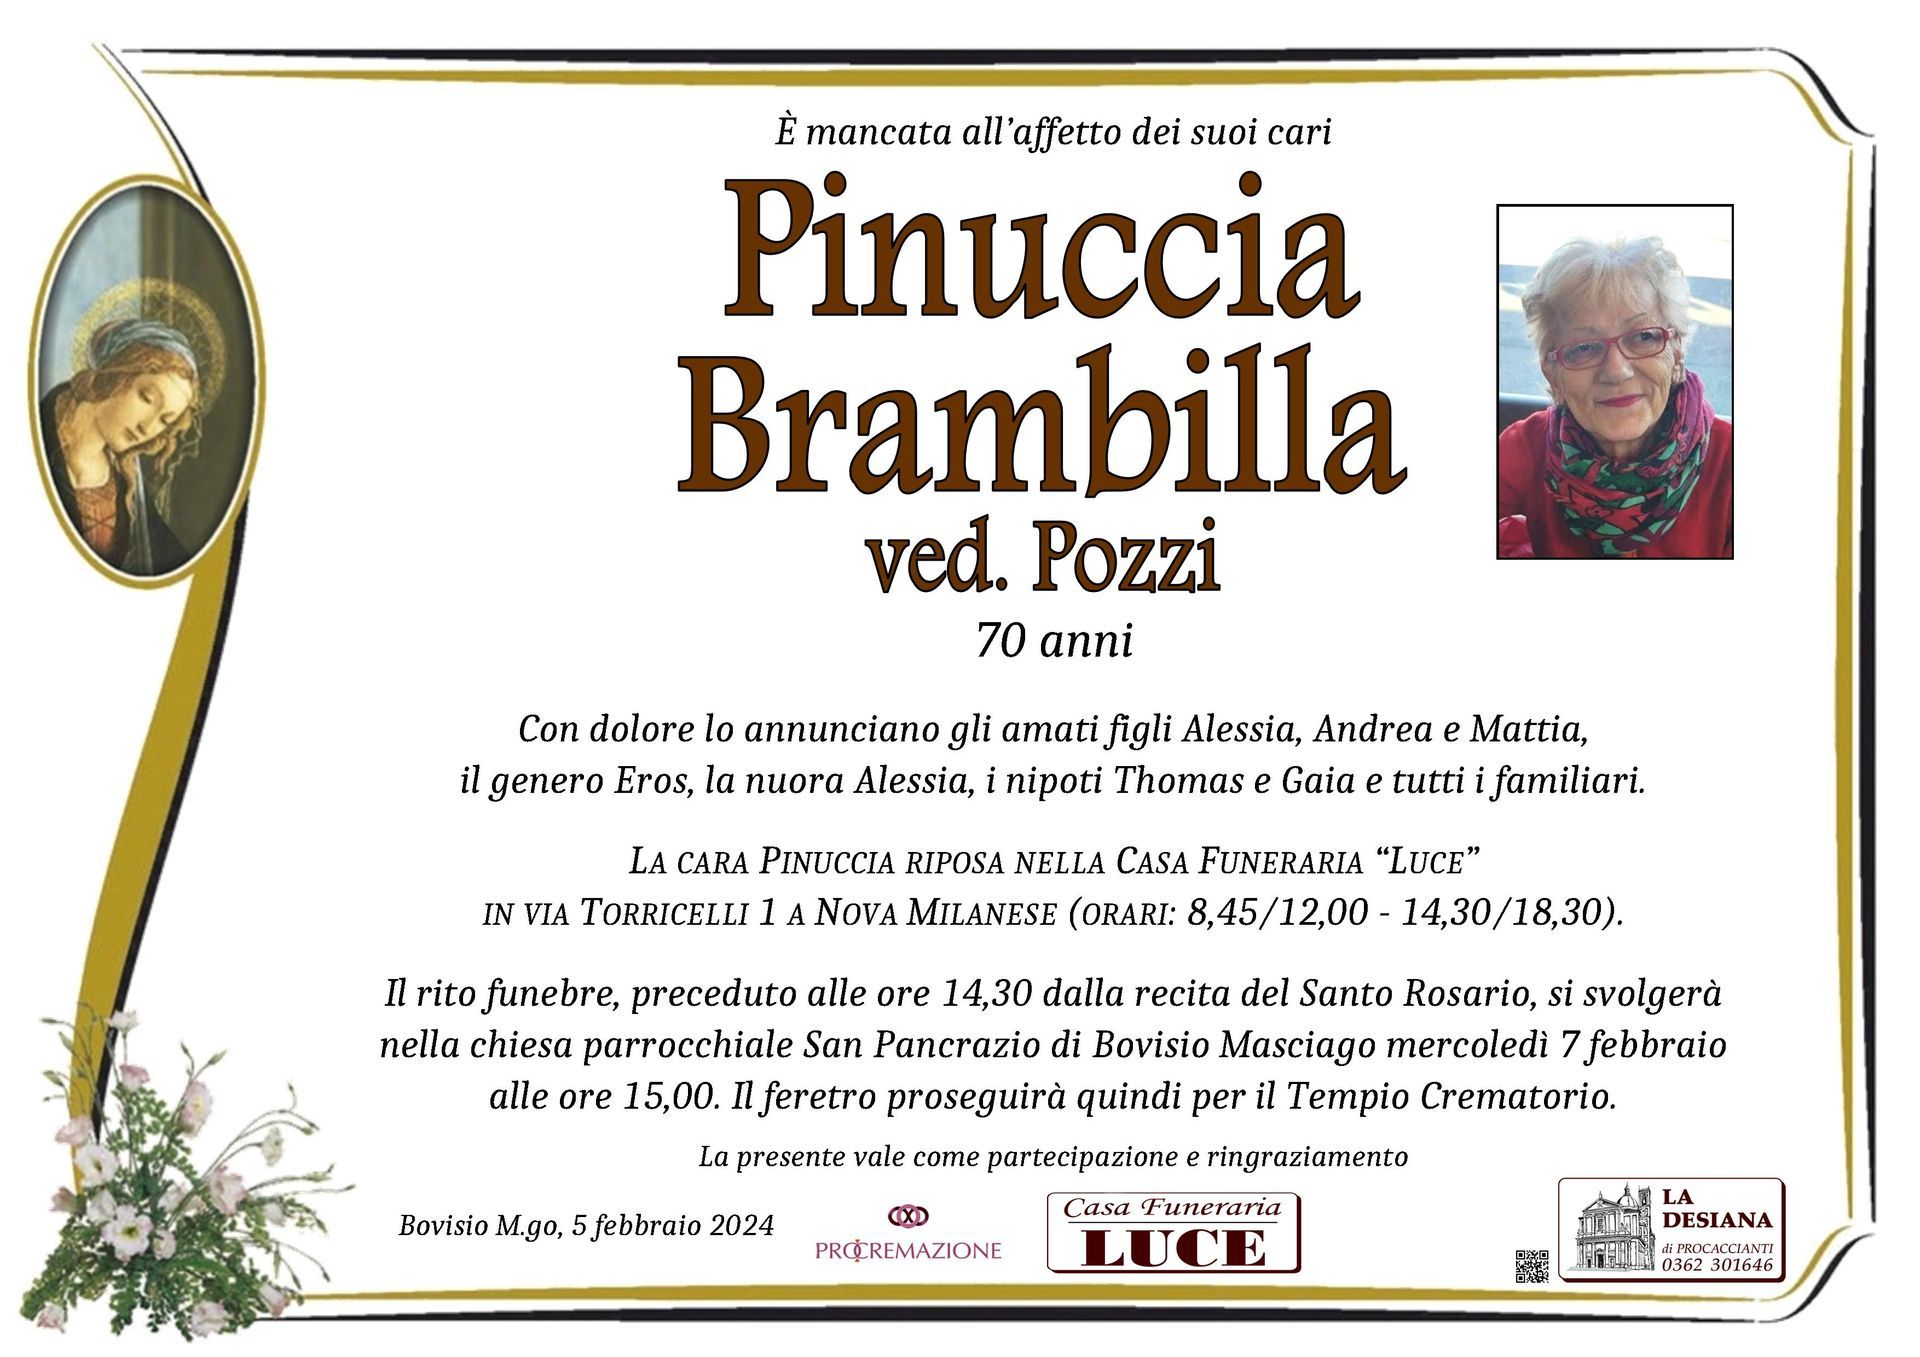 Pinuccia Brambilla ved. Pozzi